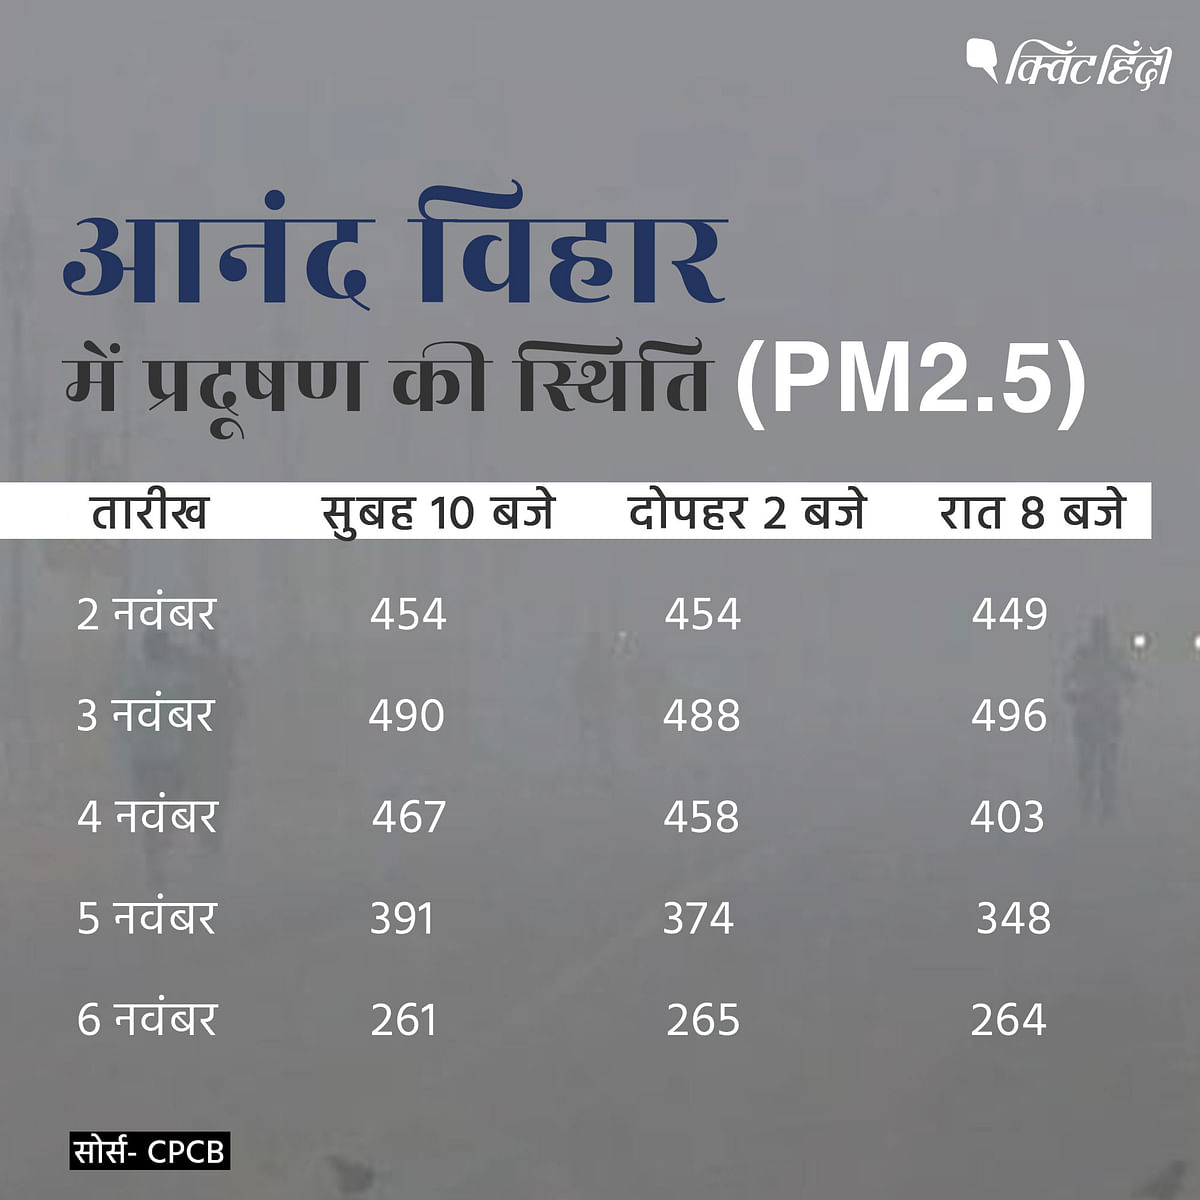  3 नवंबर के मुकाबले 4 नवंबर को दिल्ली में हवा की गुणवत्ता में सुधार देखने को मिला है.